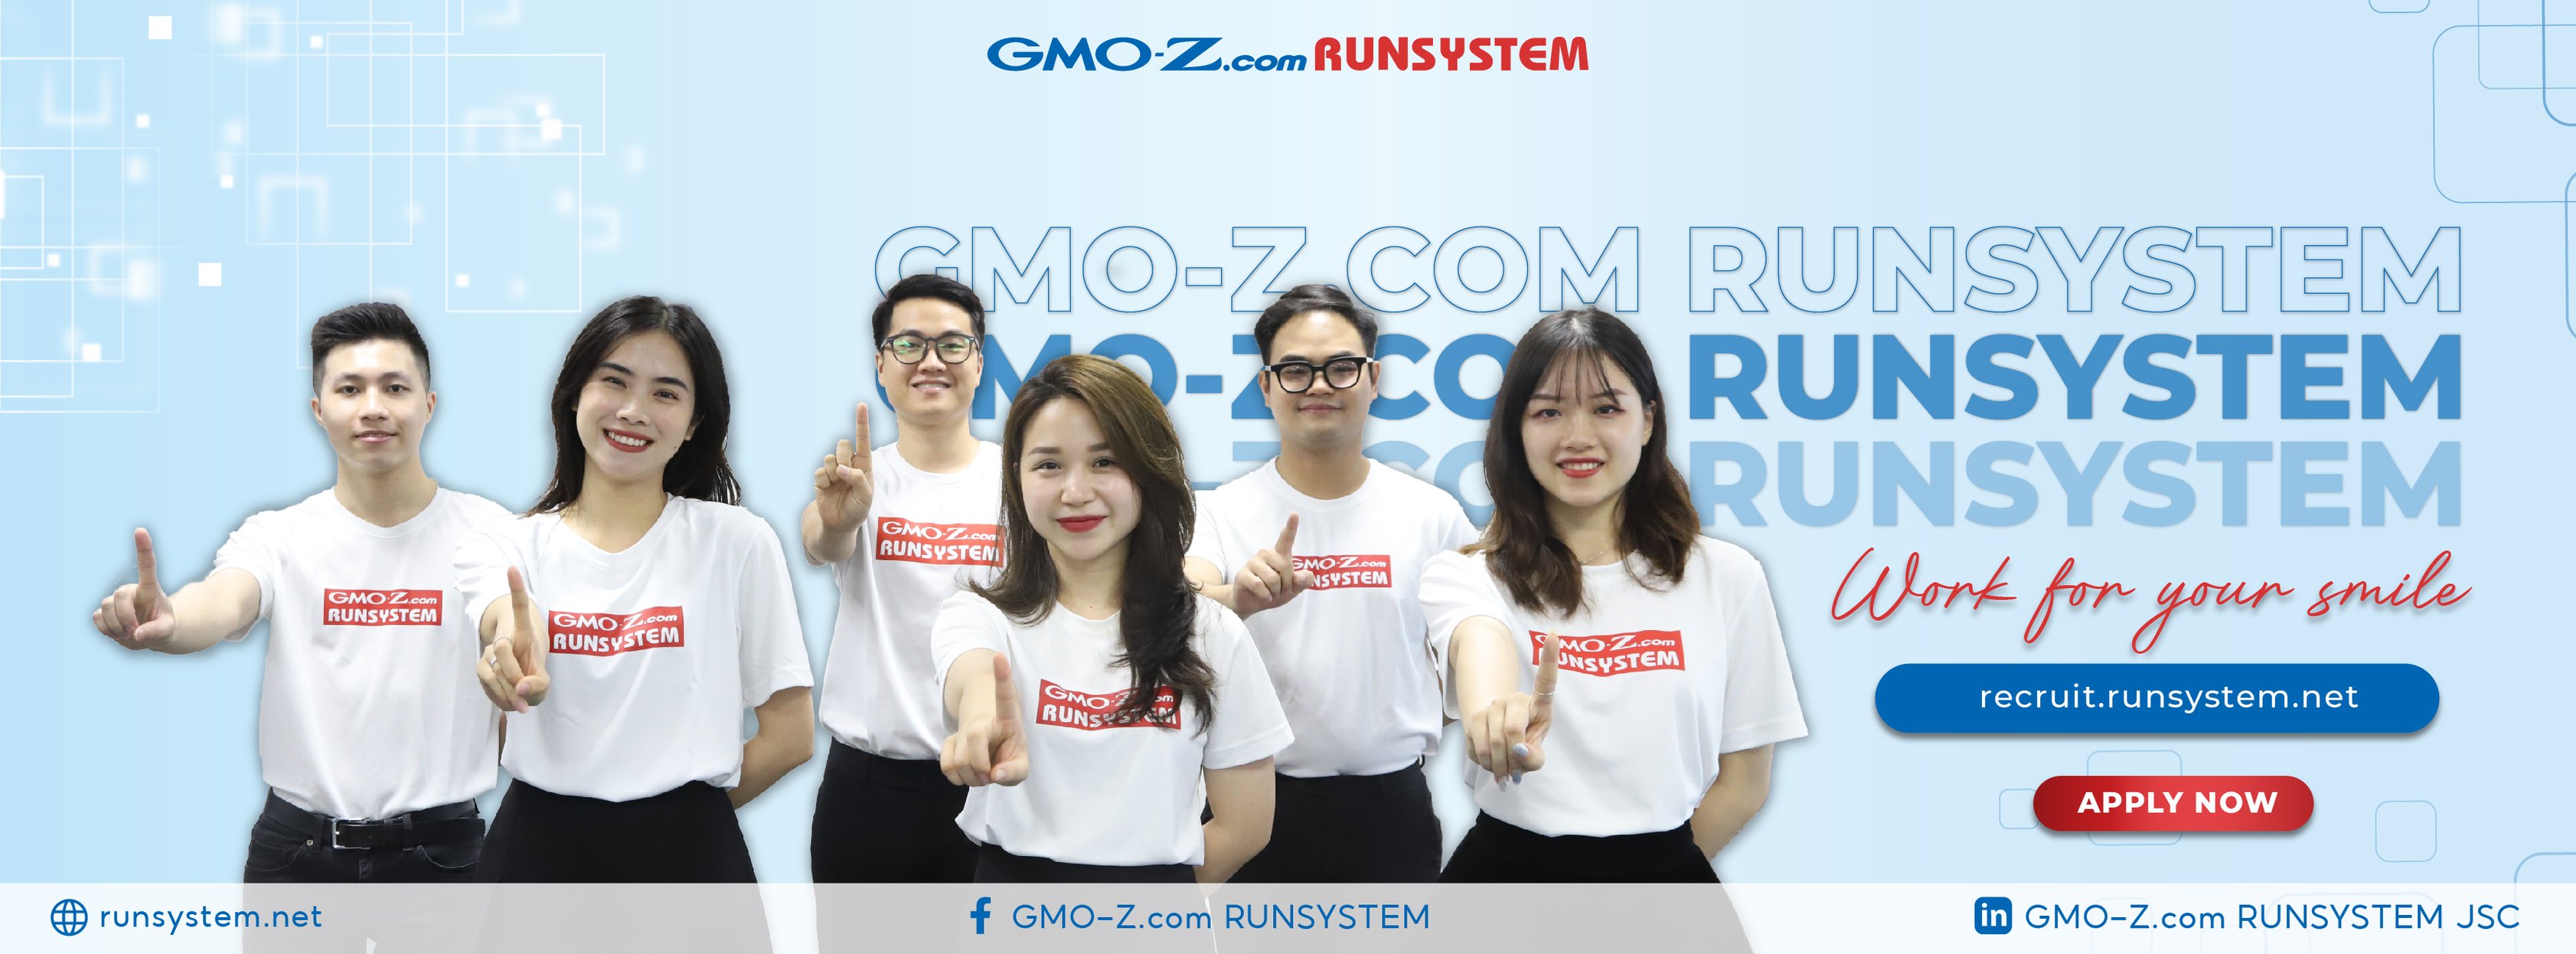 Công ty Cổ phần GMO-Z.com RUNSYSTEM